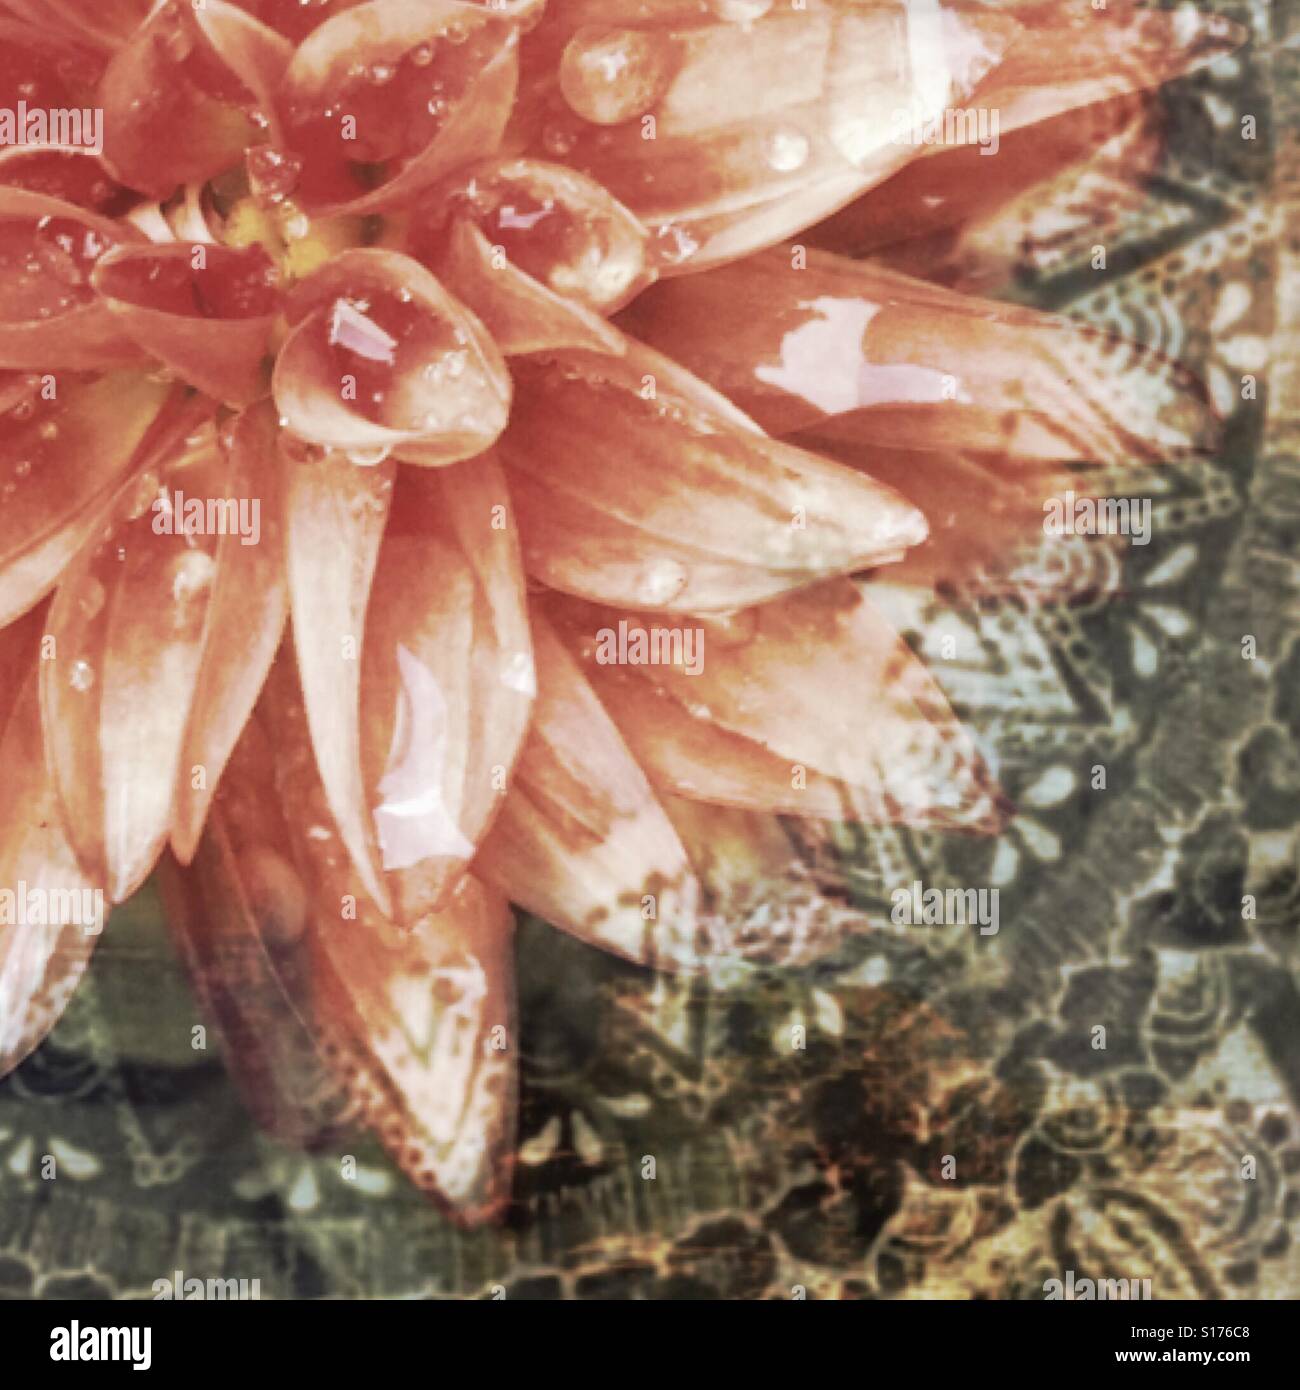 Rimanere piantato (2) iPhone foto fiore closeup, mandala, mescolato, modellato, stratificati per effetto, etnica, tribale indiano, boho Foto Stock